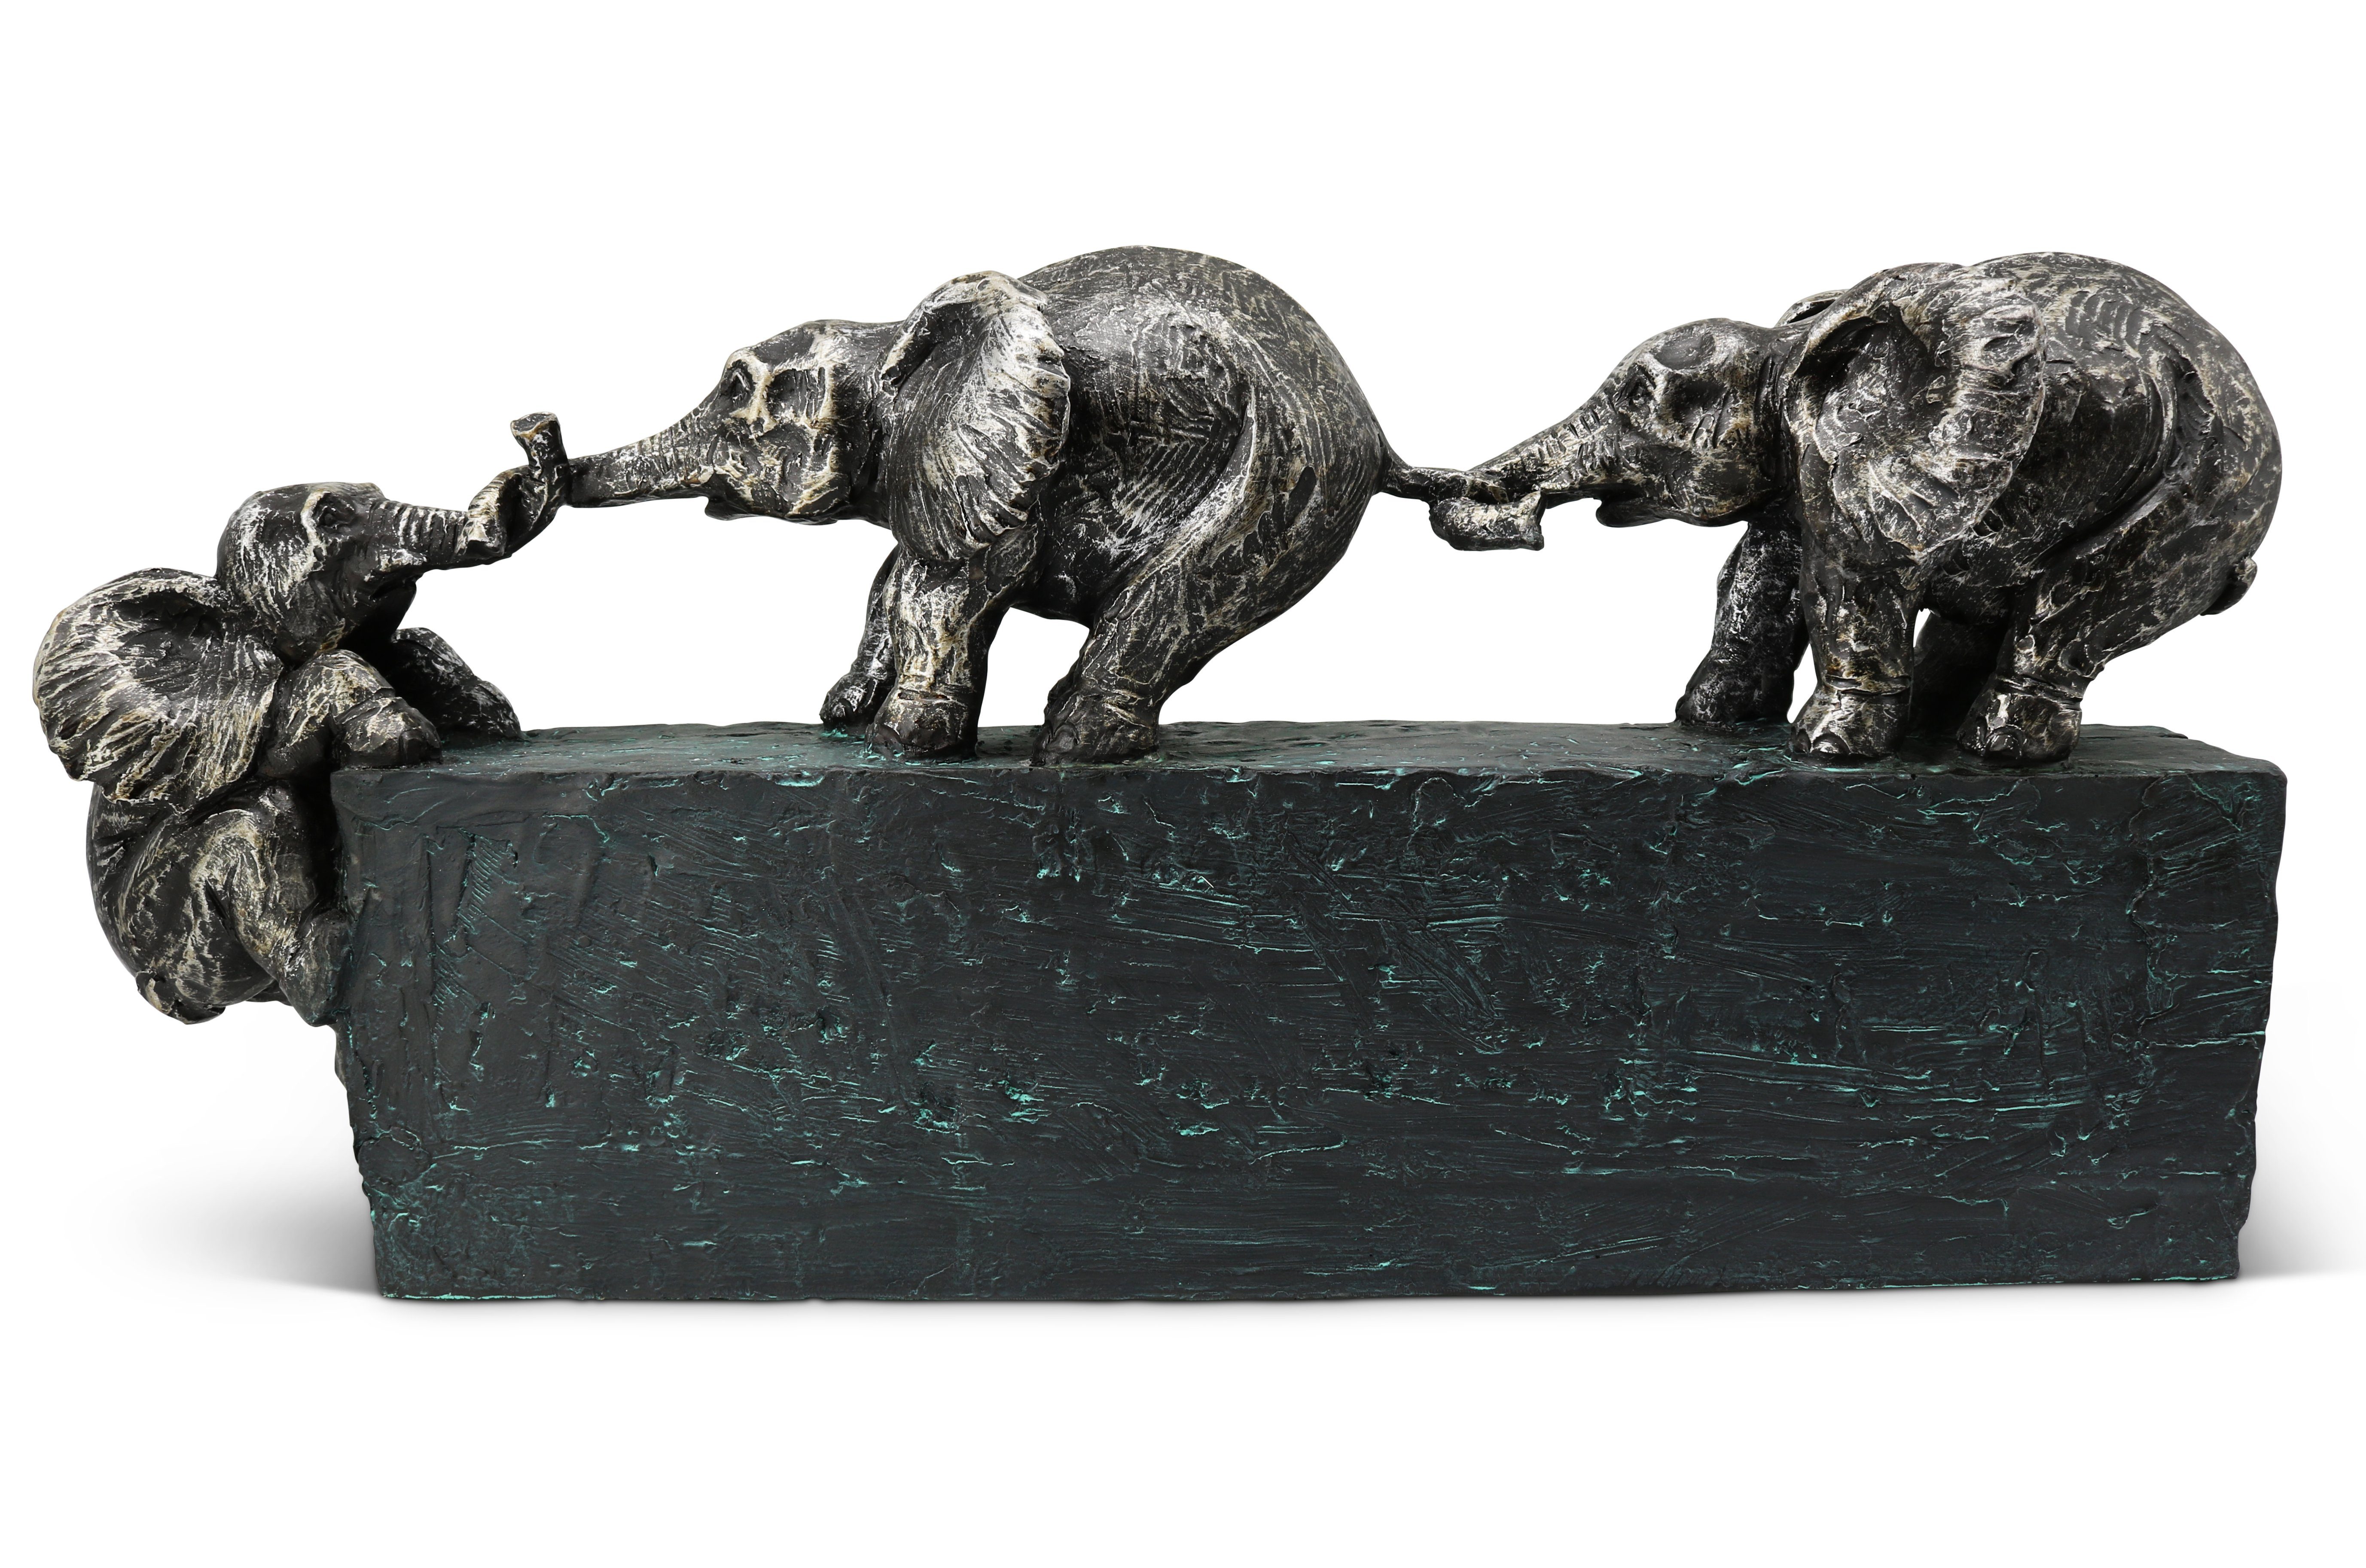 Feinknick Skulptur Familienbande - Zeitloses Symbol für Zusammenhalt in Familie & Team, Elefanten Dekoration aus Marmorit-Polyresin 43 cm lang